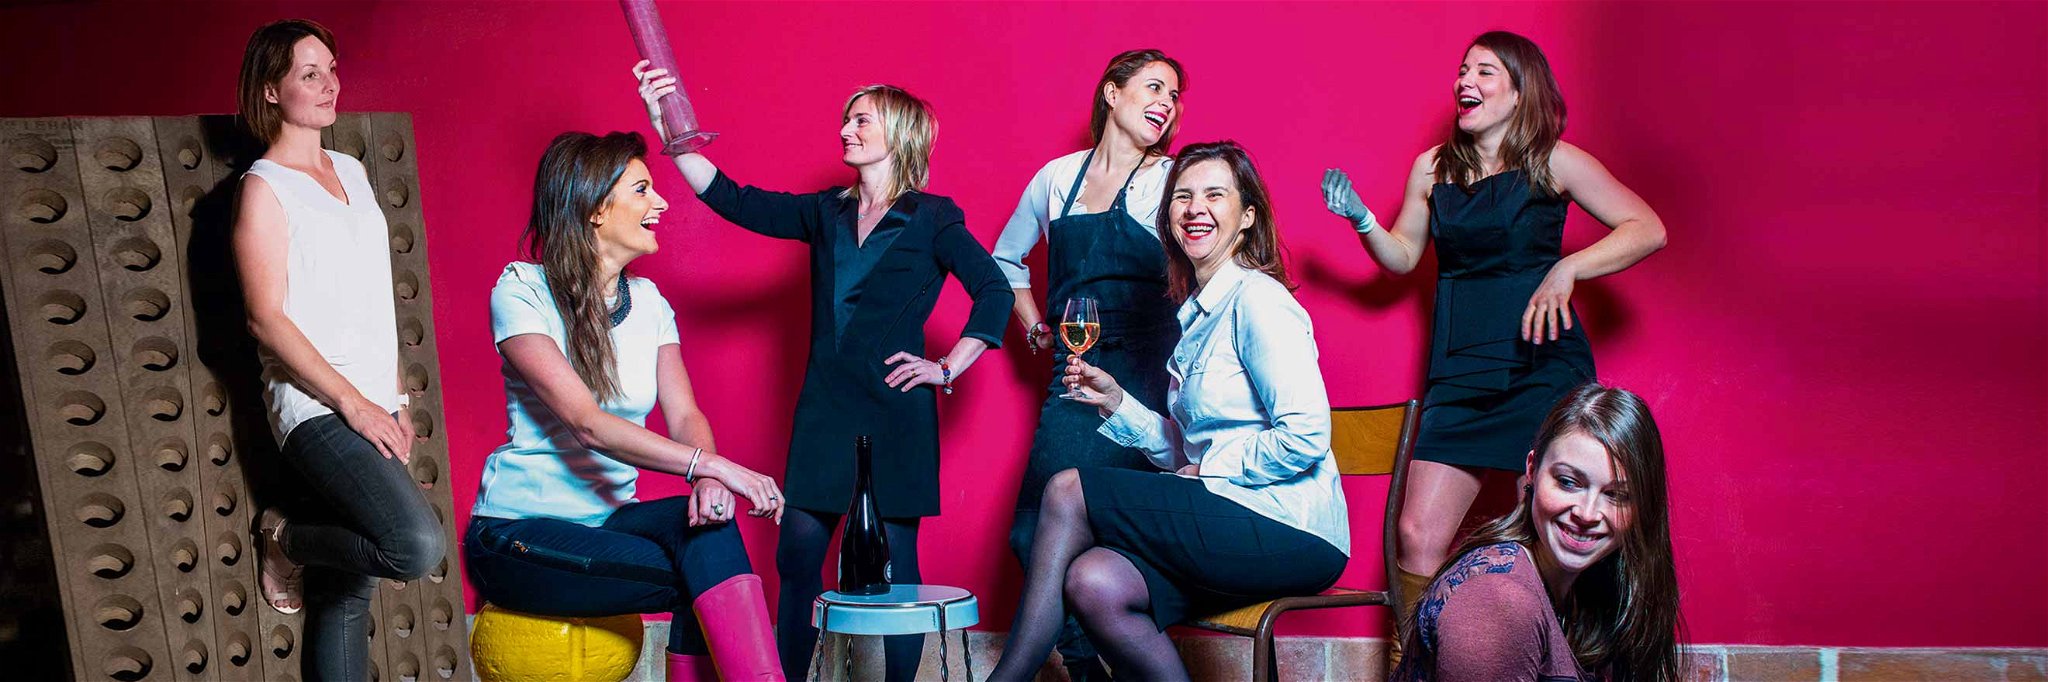 Der Verband der Champagner-Winzerinnen&nbsp;»Les Fa‘Bulleuses de Champagne« wurde geschaffen, um ihre Meinung und Appellation zu vertreten.